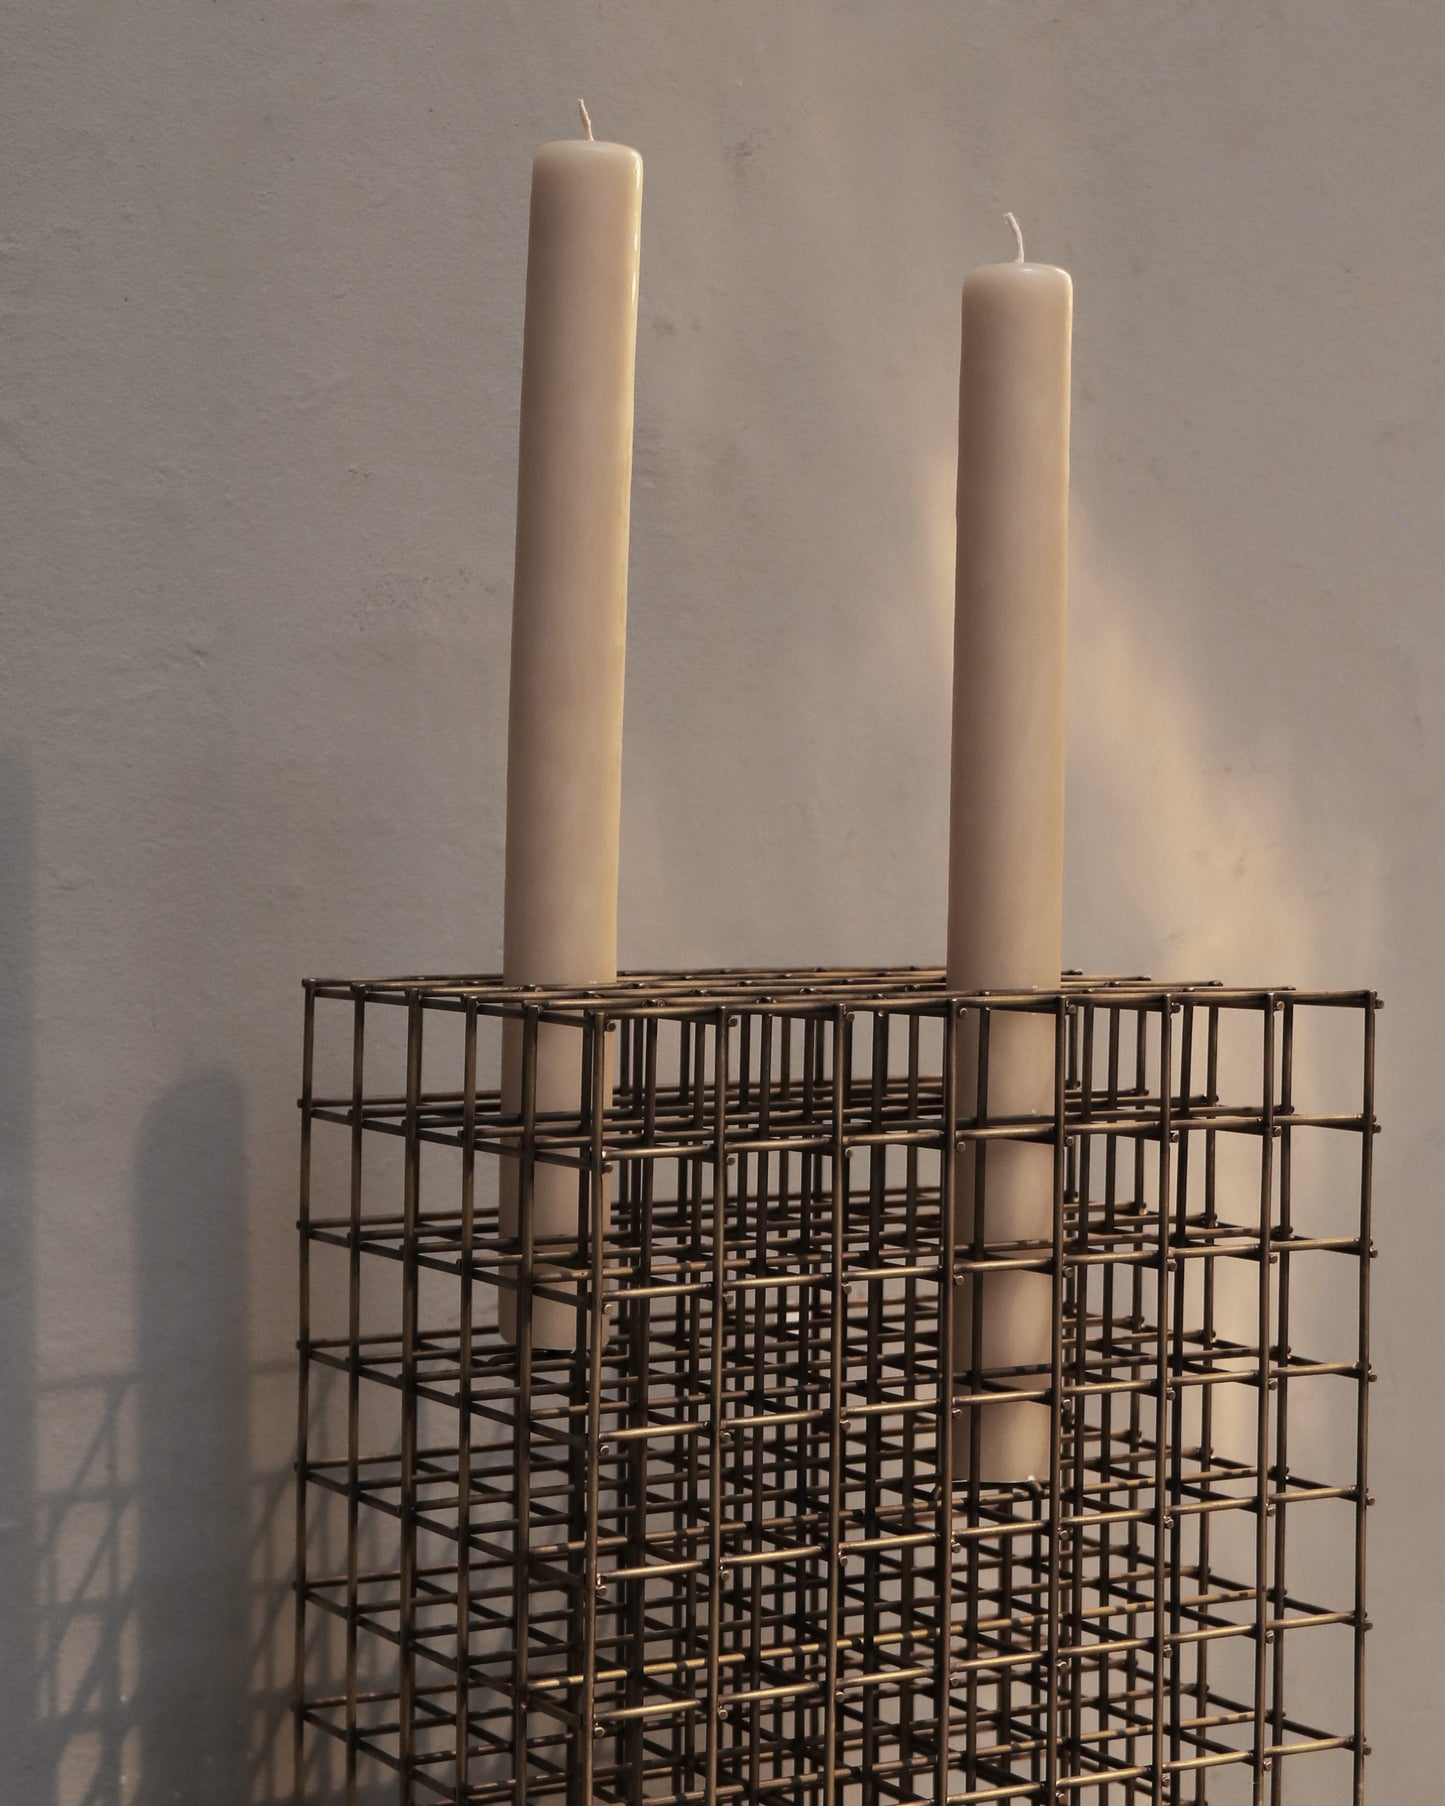 Candle Grid I by Héctor Esrawe